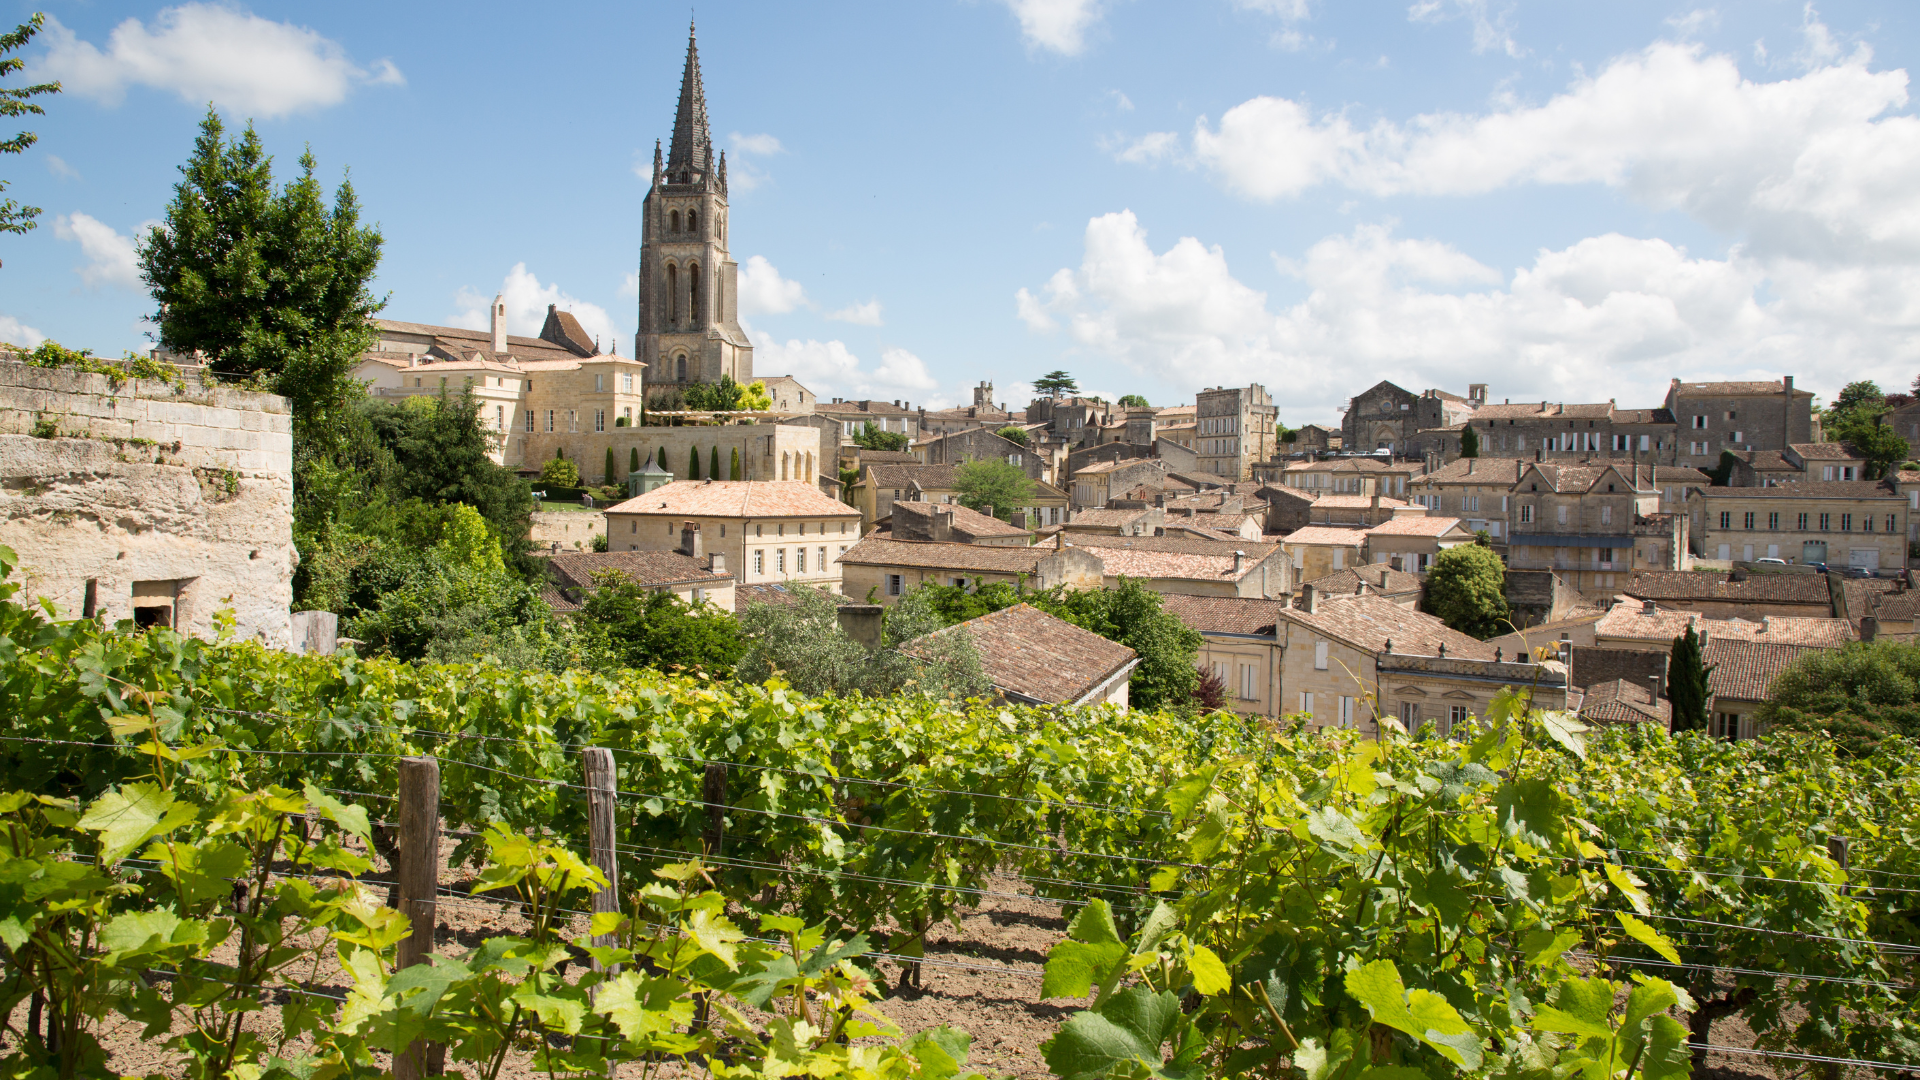 Enjoy wine in Bordeaux